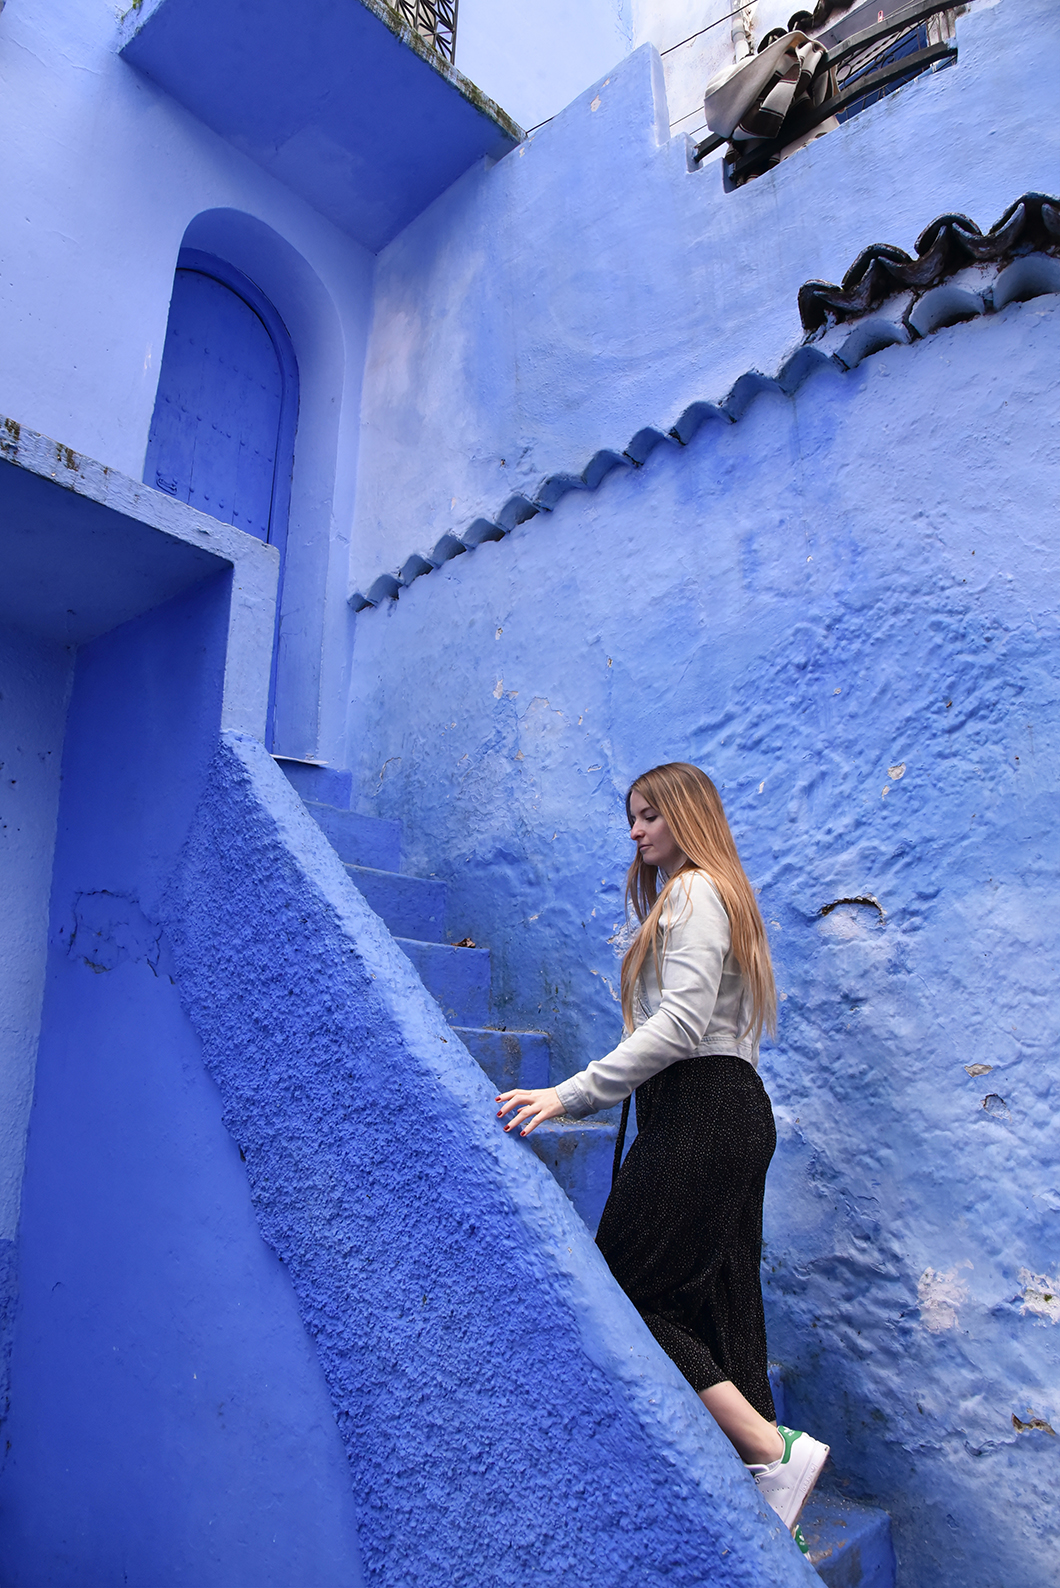 Chefchaouen, la perle bleue du Maroc